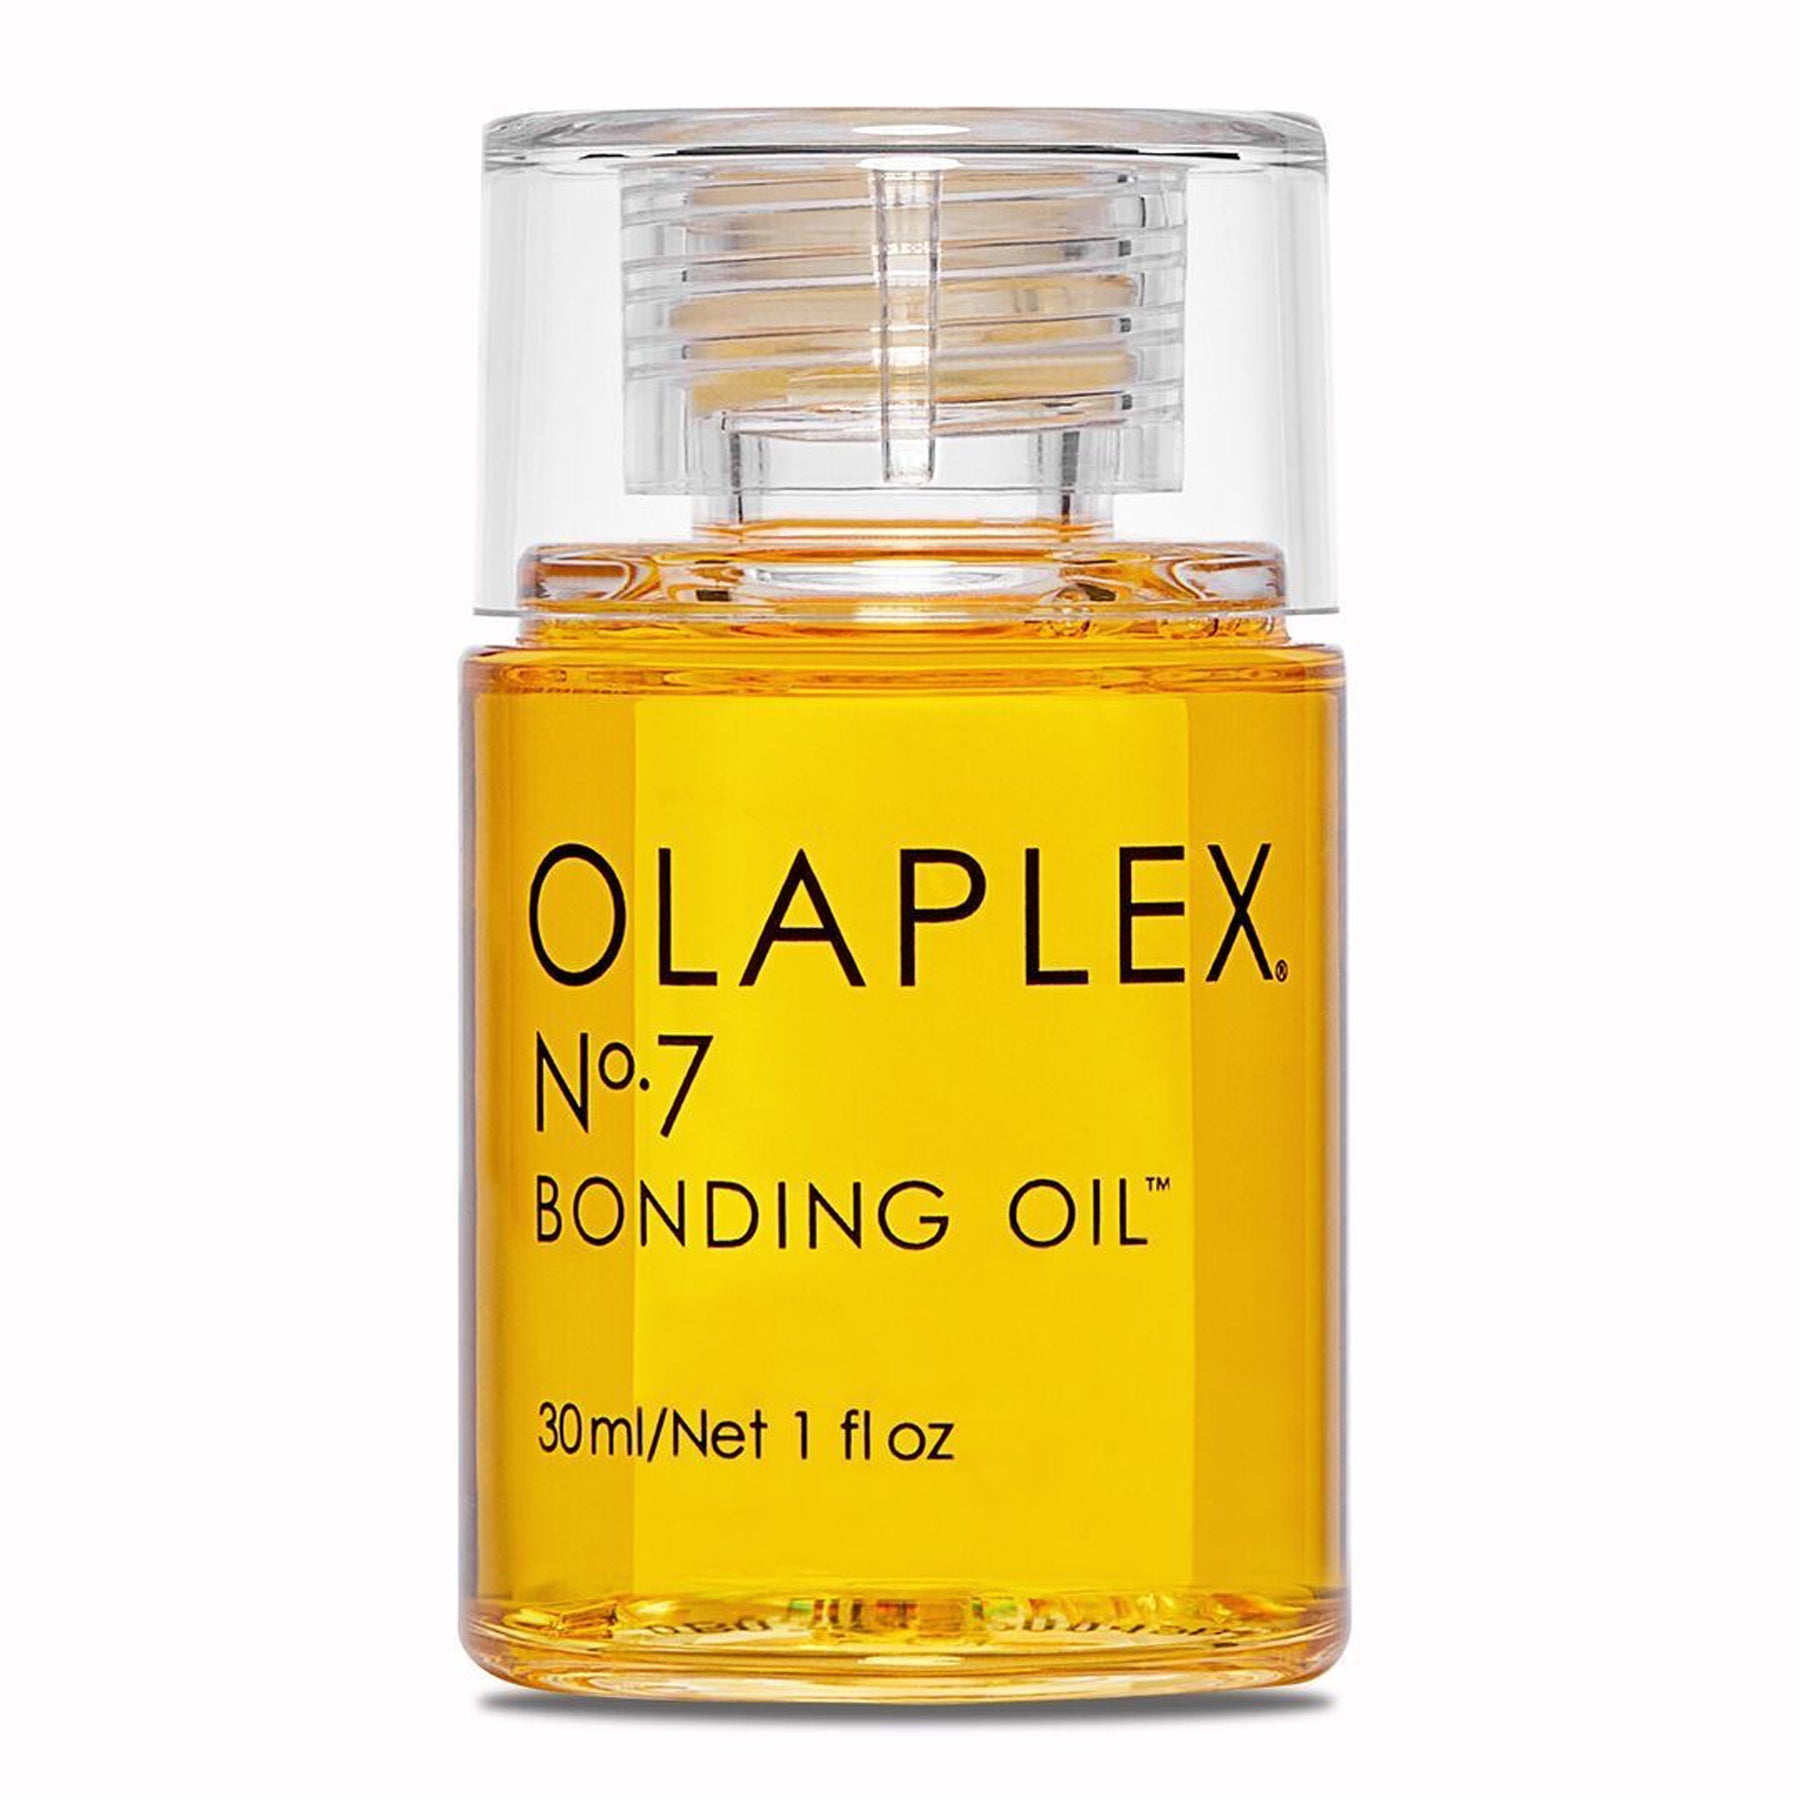 Olaplex No. 7 Bonding Oil, 1 Fluid Ounces / 30 Milliliters.